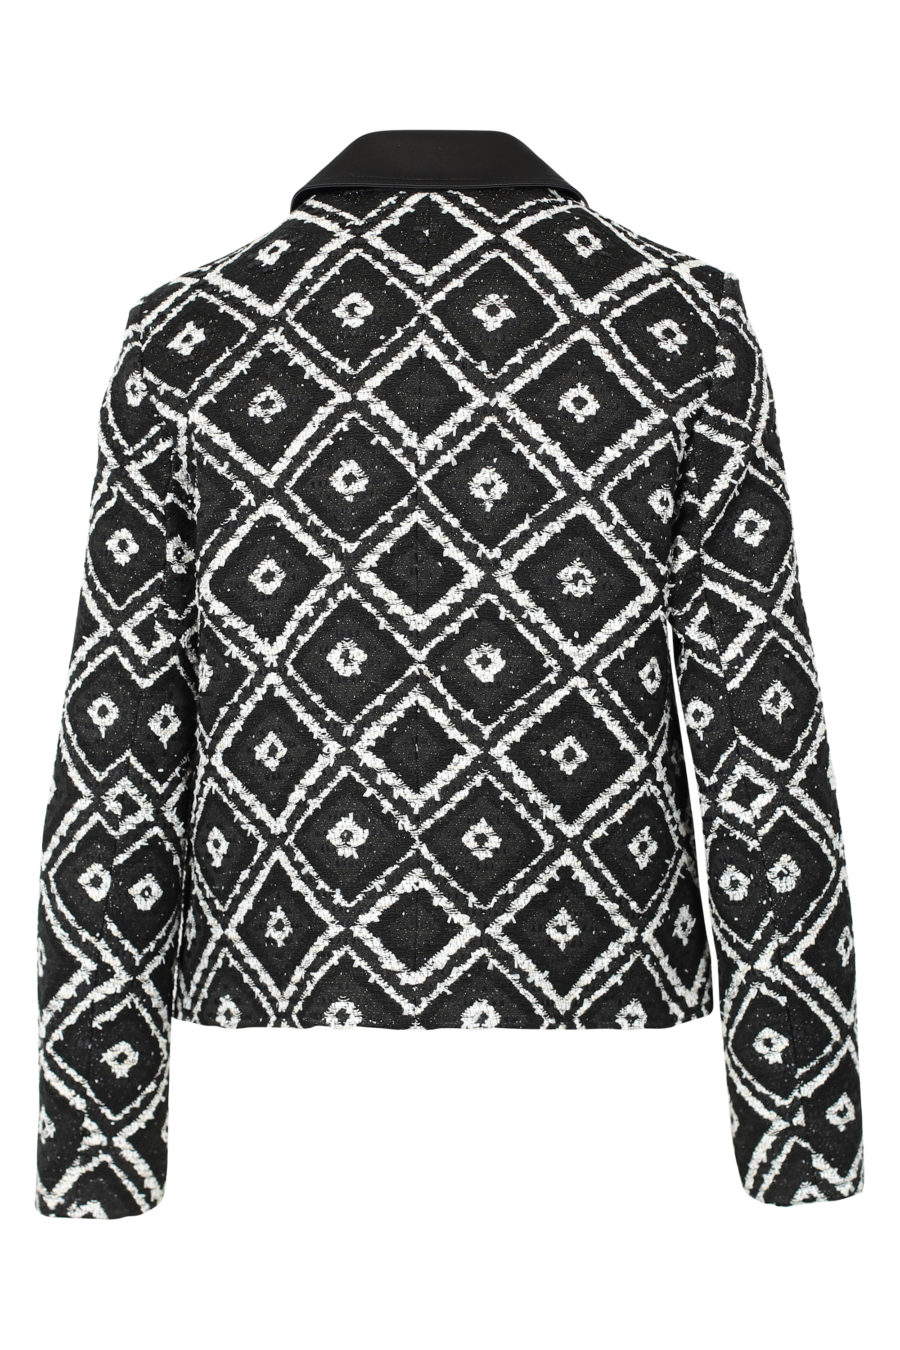 Veste géométrique noire et blanche "Boucle" - IMG 3119